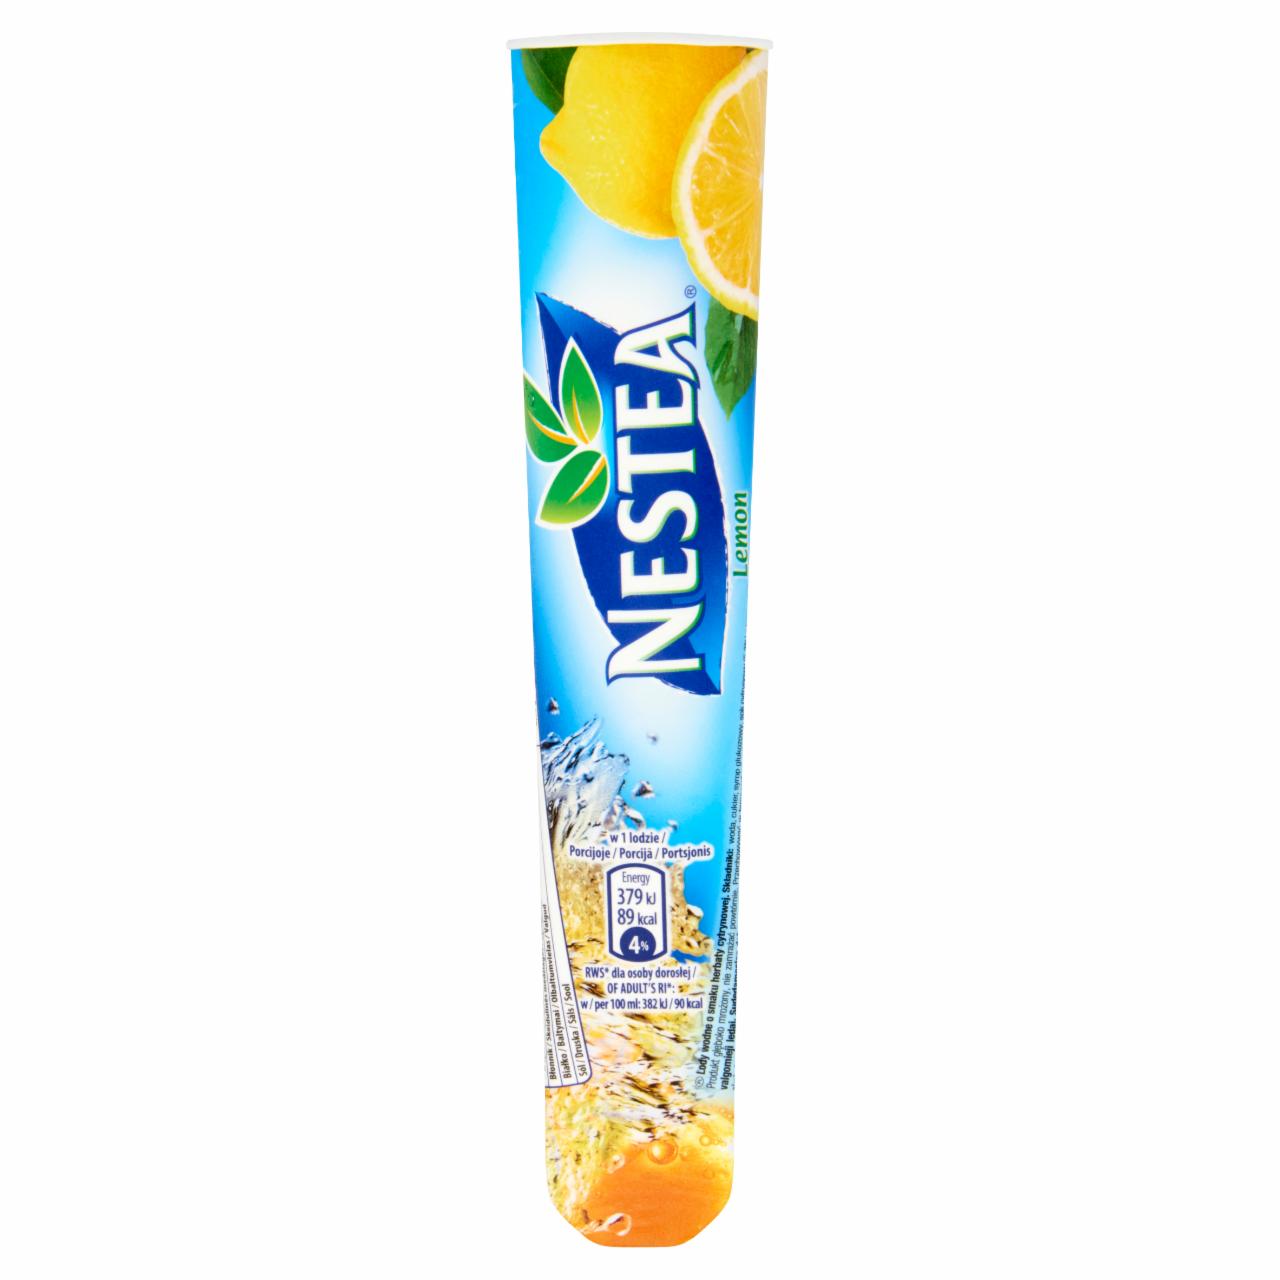 Képek - Nestea citromos tea ízű jégkrém 99 ml